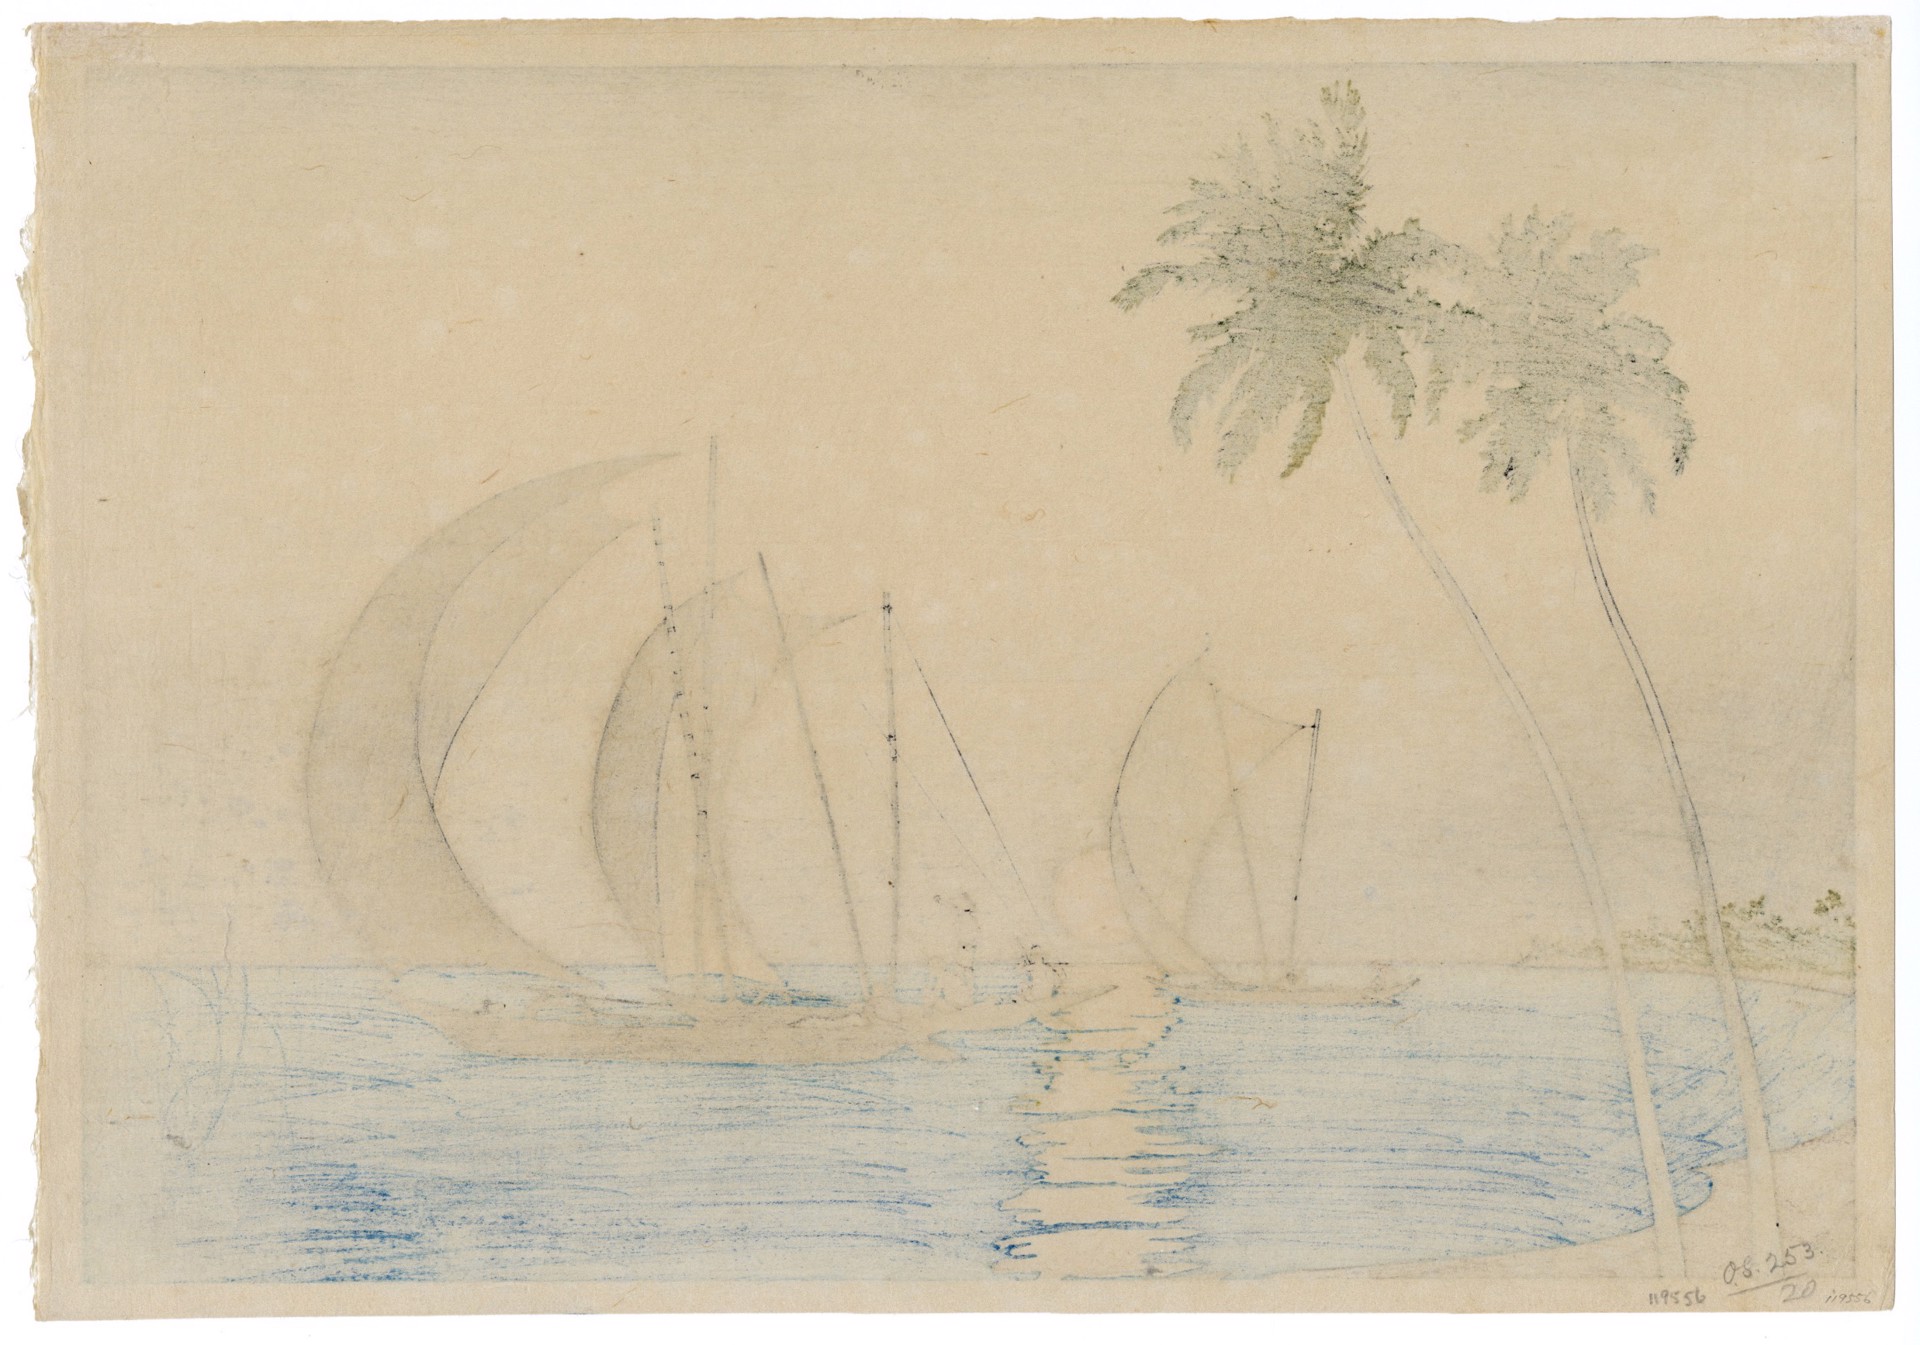 Ceylon by Charles Bartlett